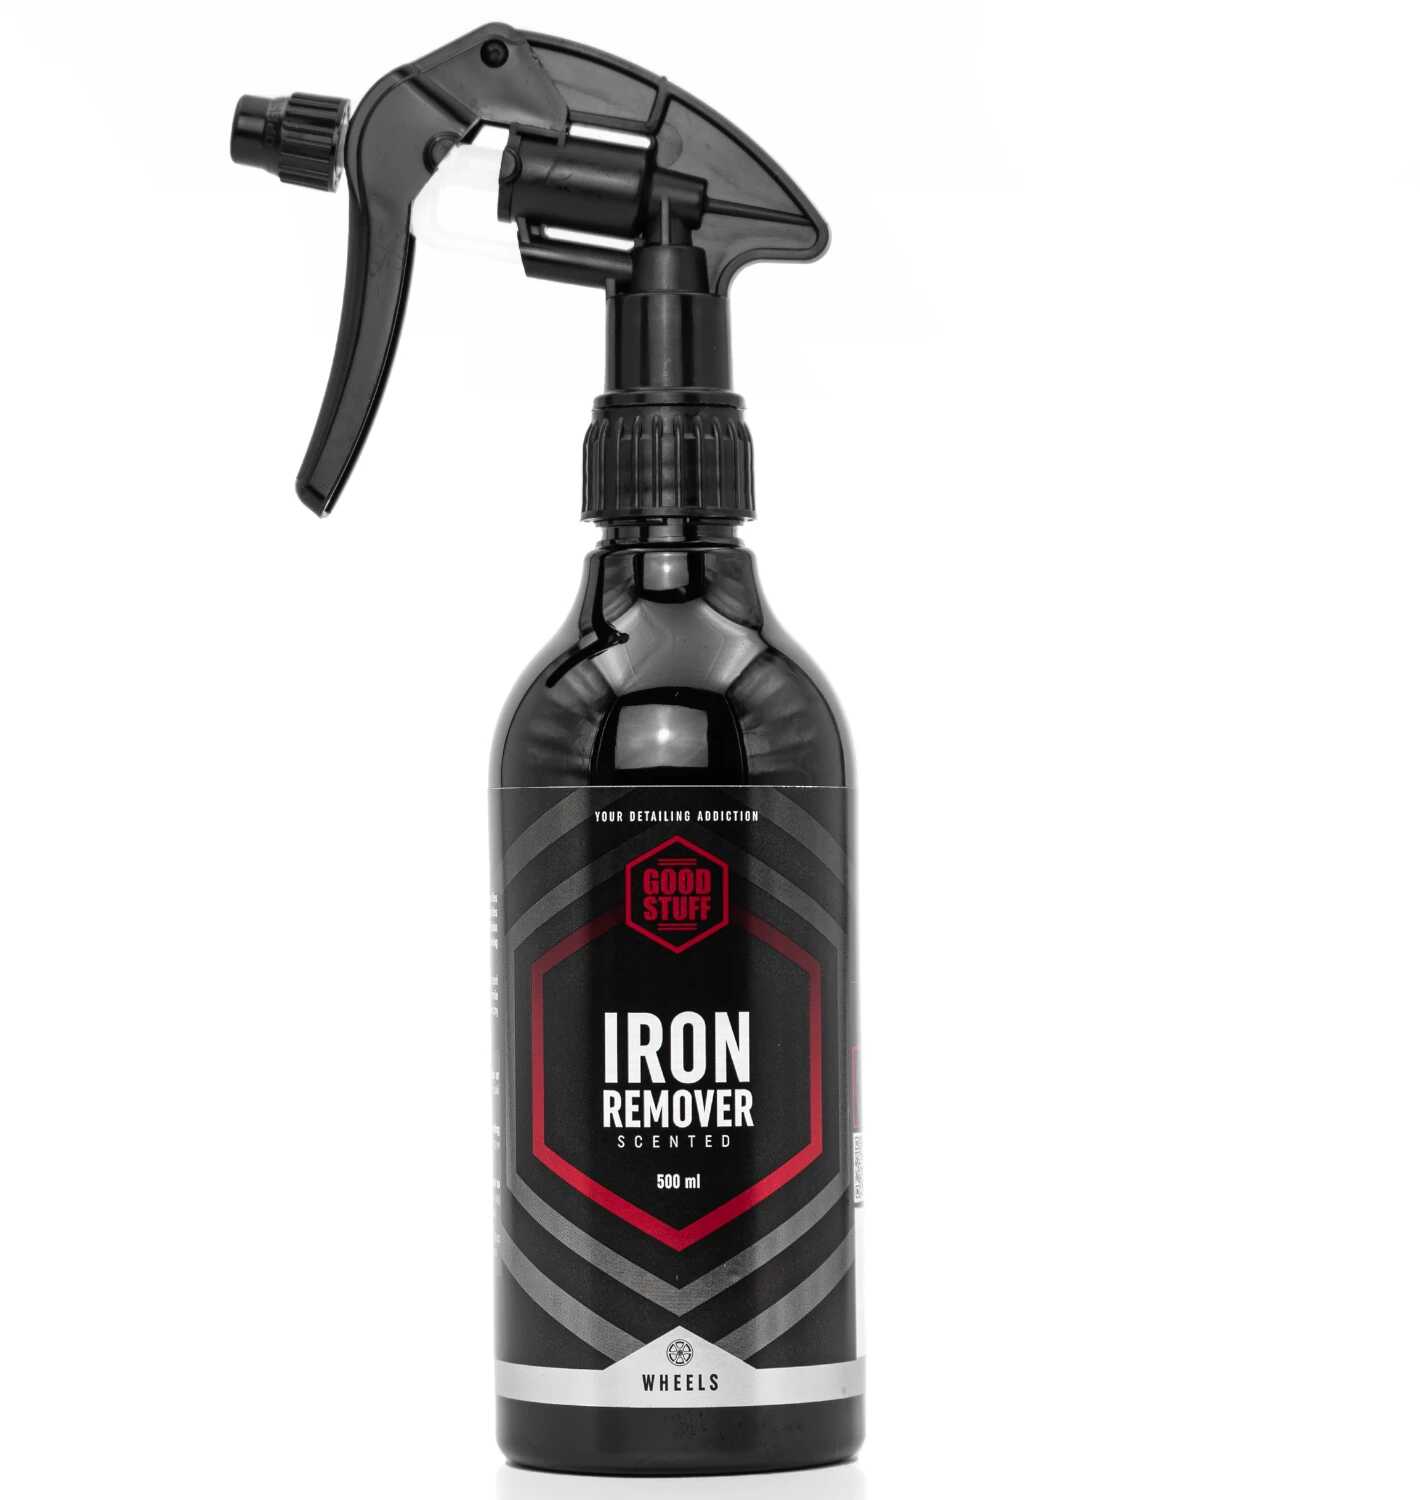 Good Stuff Iron Remover - produkt do usuwania zanieczyszczeń metalicznych 500ml